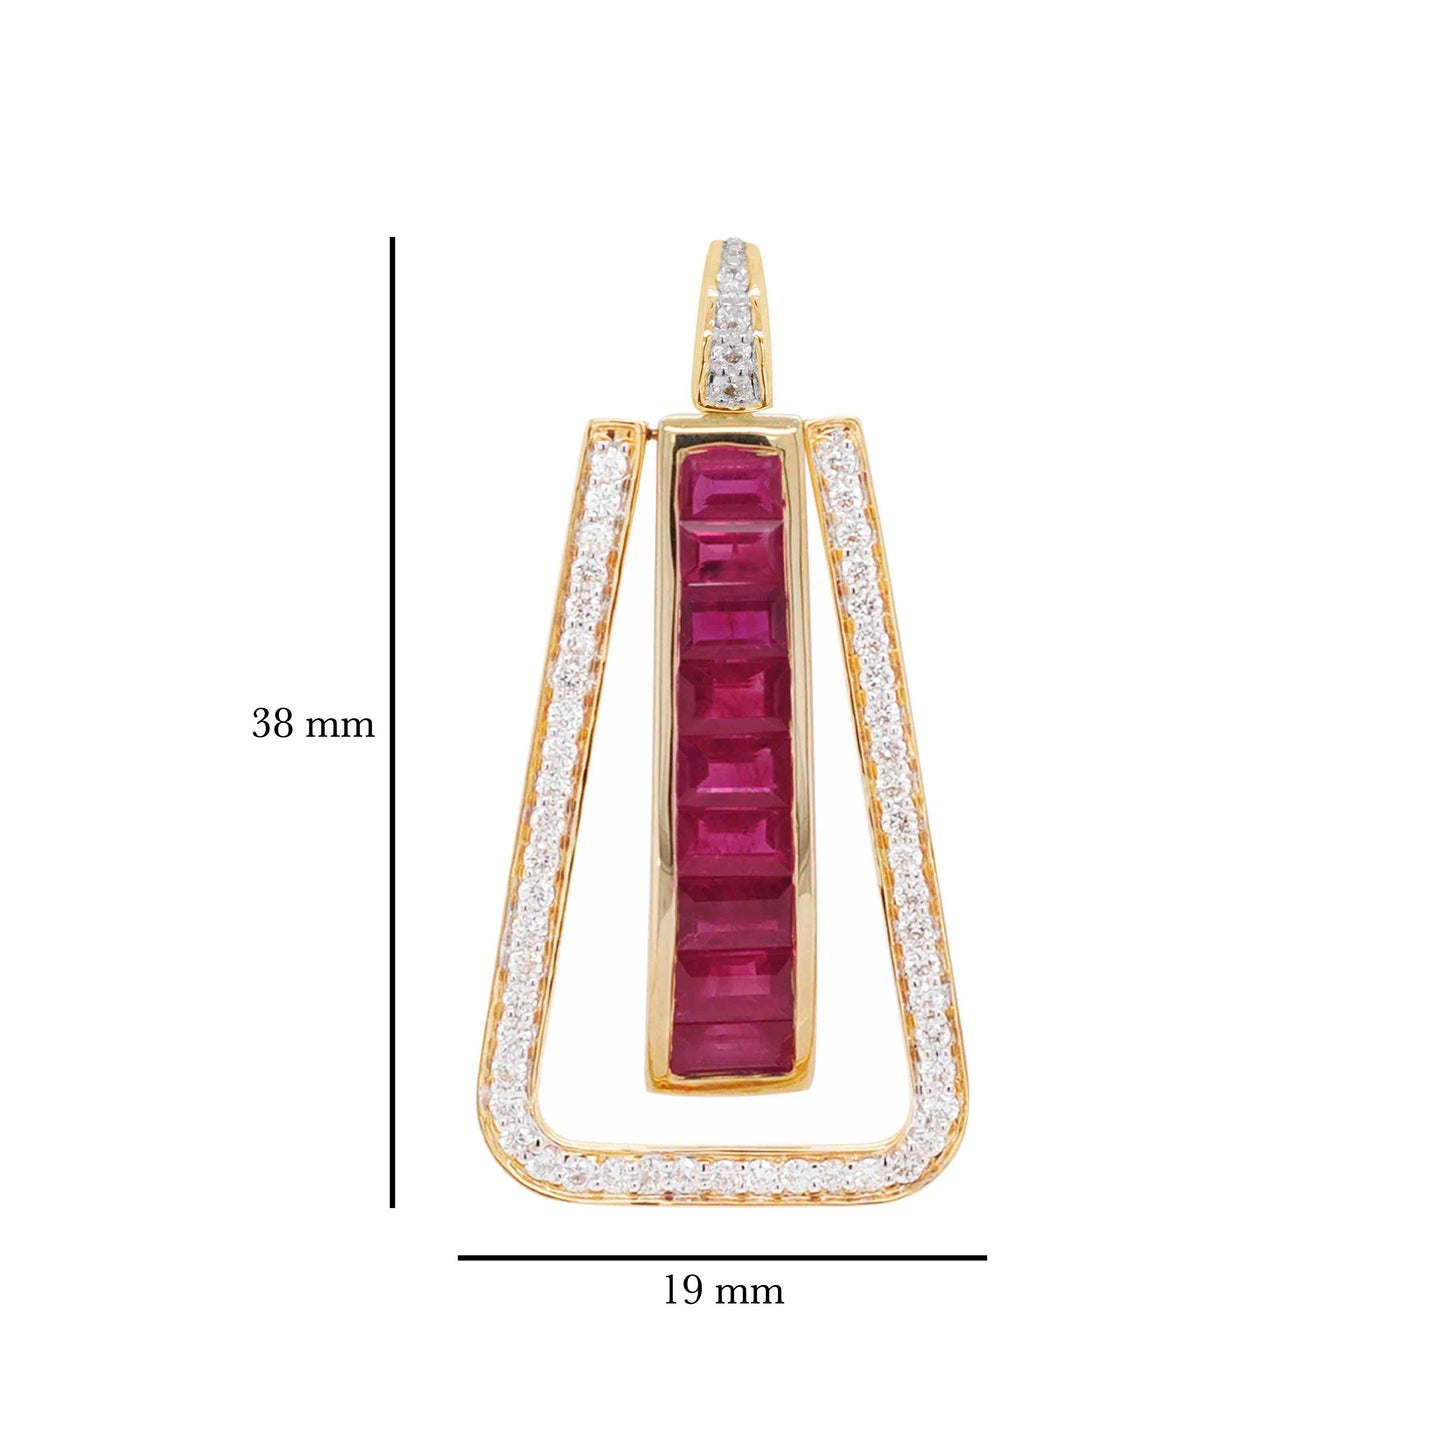 18K Gold Art Deco Channel-Set Ruby Diamond Pendant Necklace